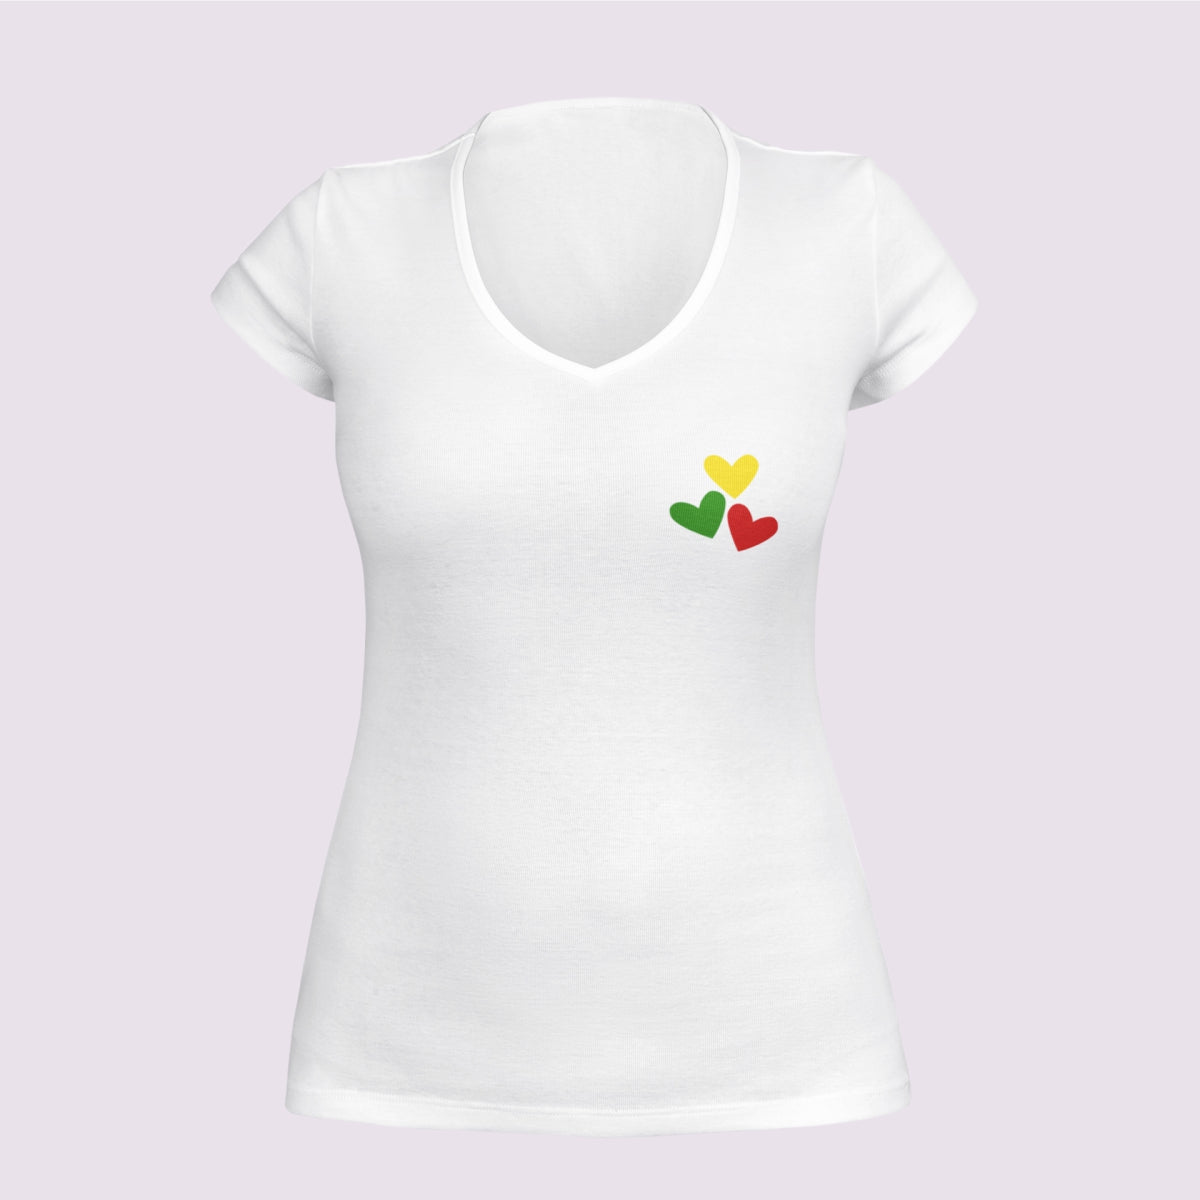 Balti moteriški marškinėliai su V kaklu "Trys lietuviškos širdelės" PASKUTINIAI VIENETAI (Imperial V)